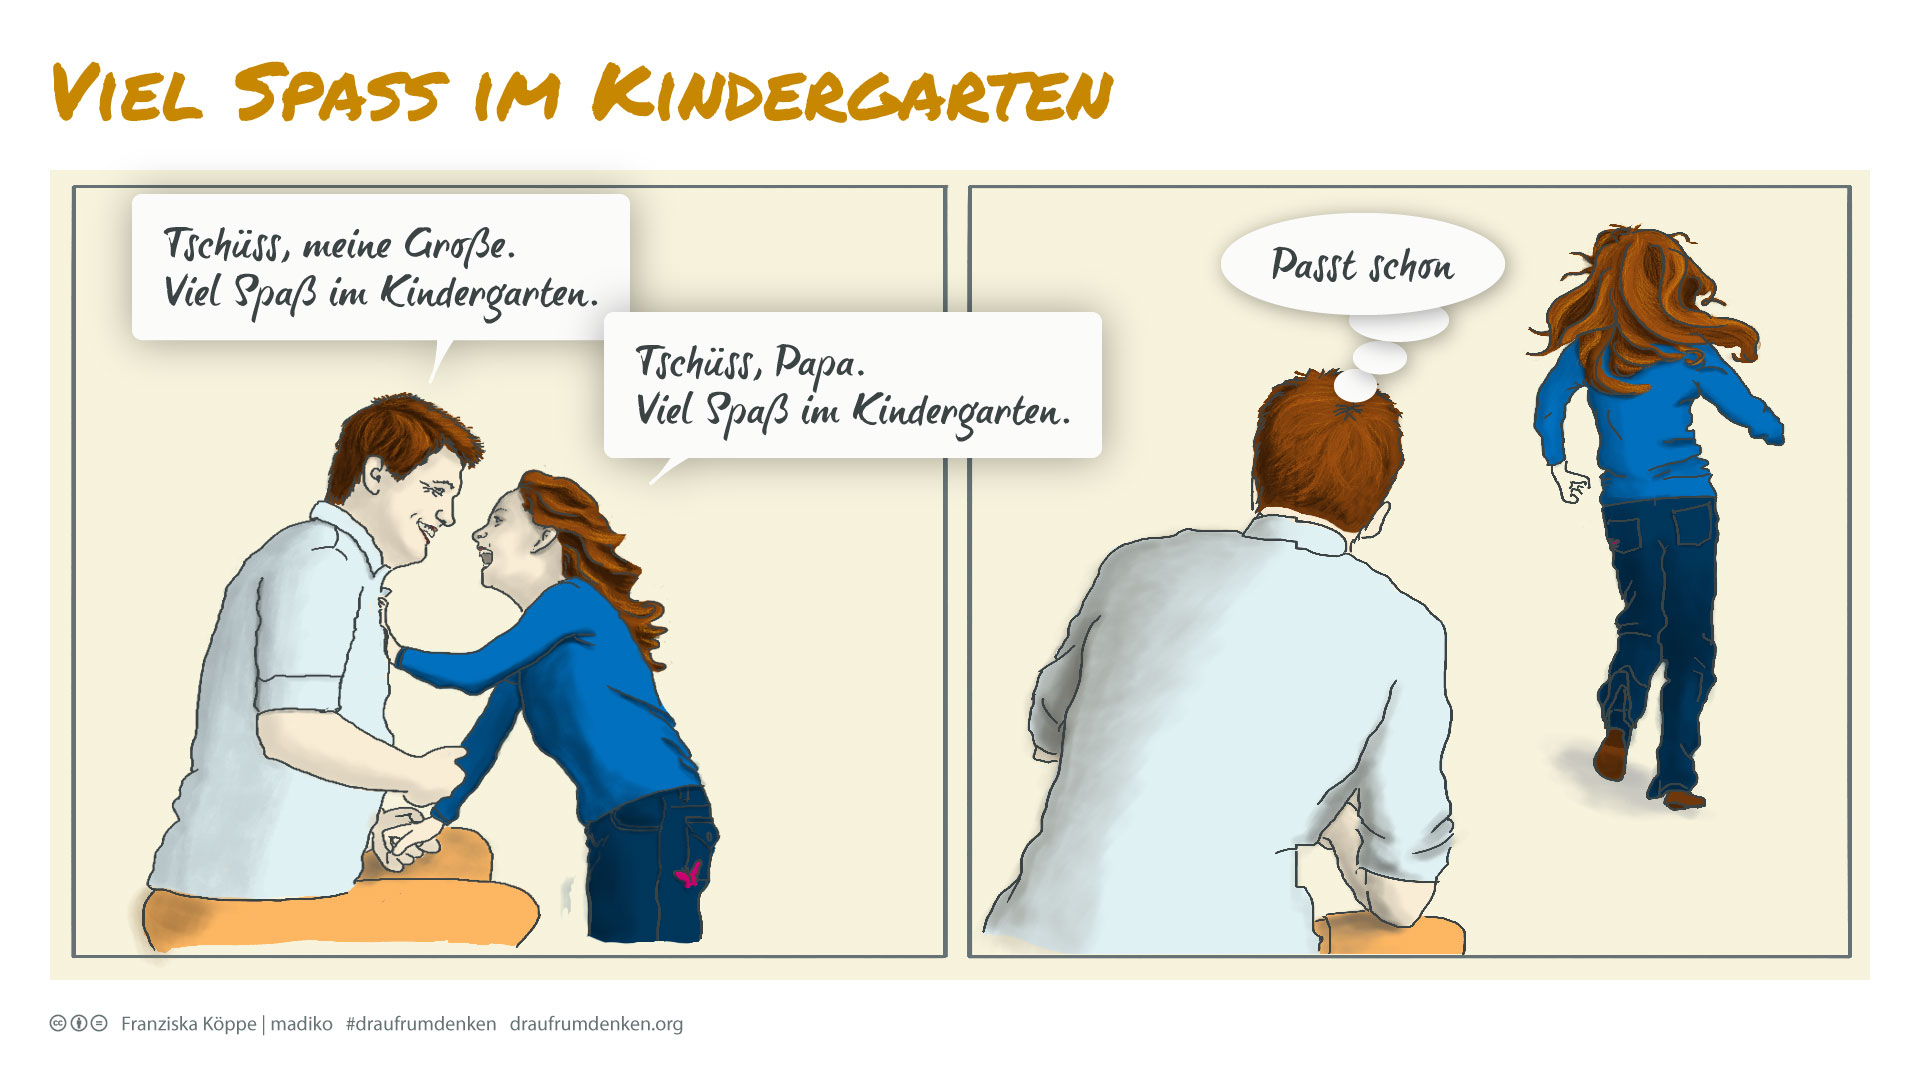 draufrumdenken: Viel Spaß im Kindergarten. Bild: cc Franziska Köppe | madiko